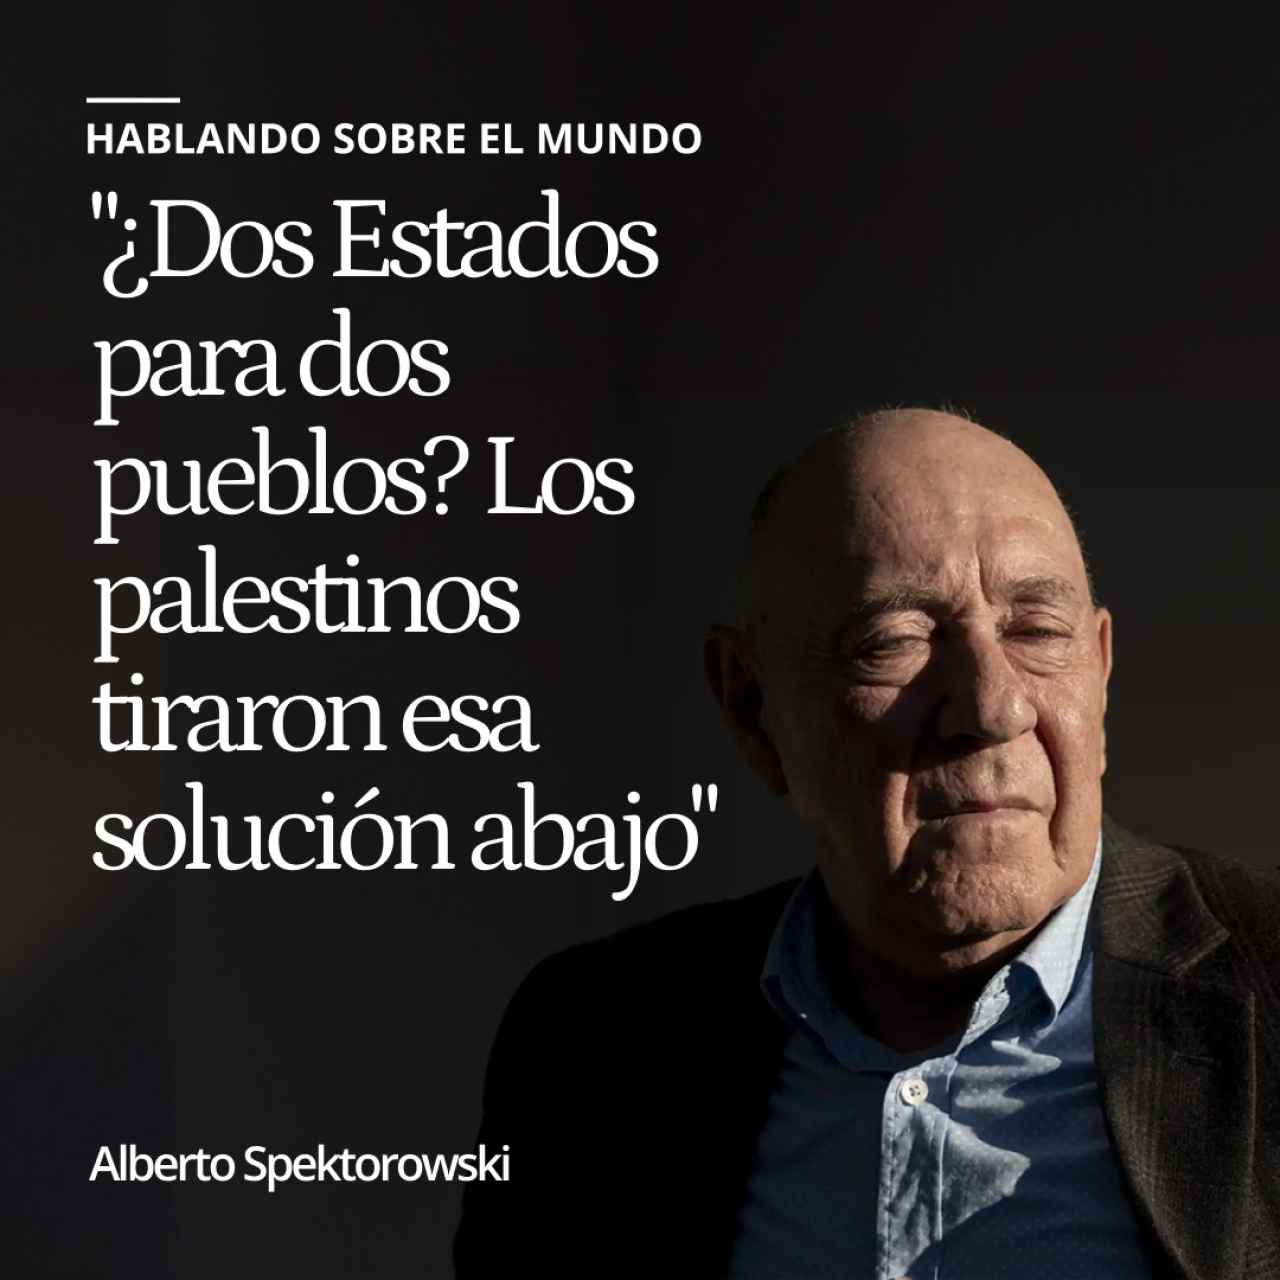 Alberto Spektorowski: "¿Dos Estados para dos pueblos? Los palestinos tiraron esa solución abajo"